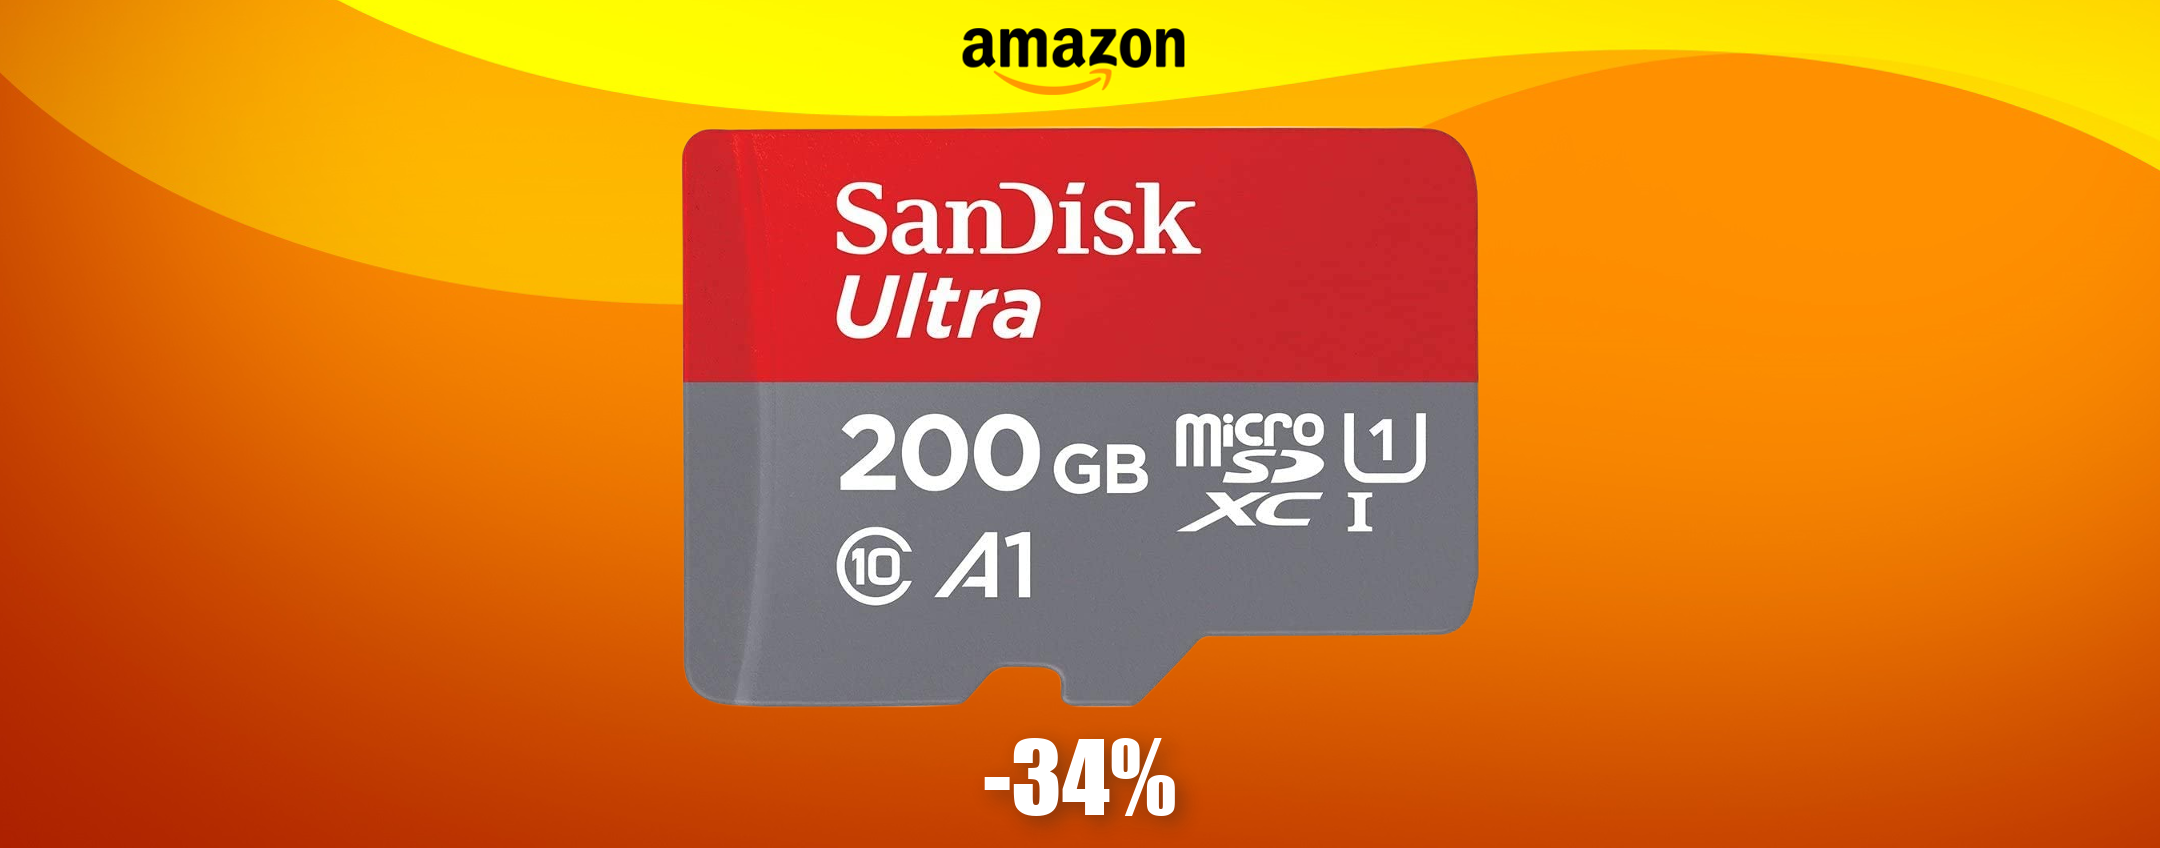 MicroSD 200GB Sandisk: la porti a casa con appena 30€ (SCONTO 34%)